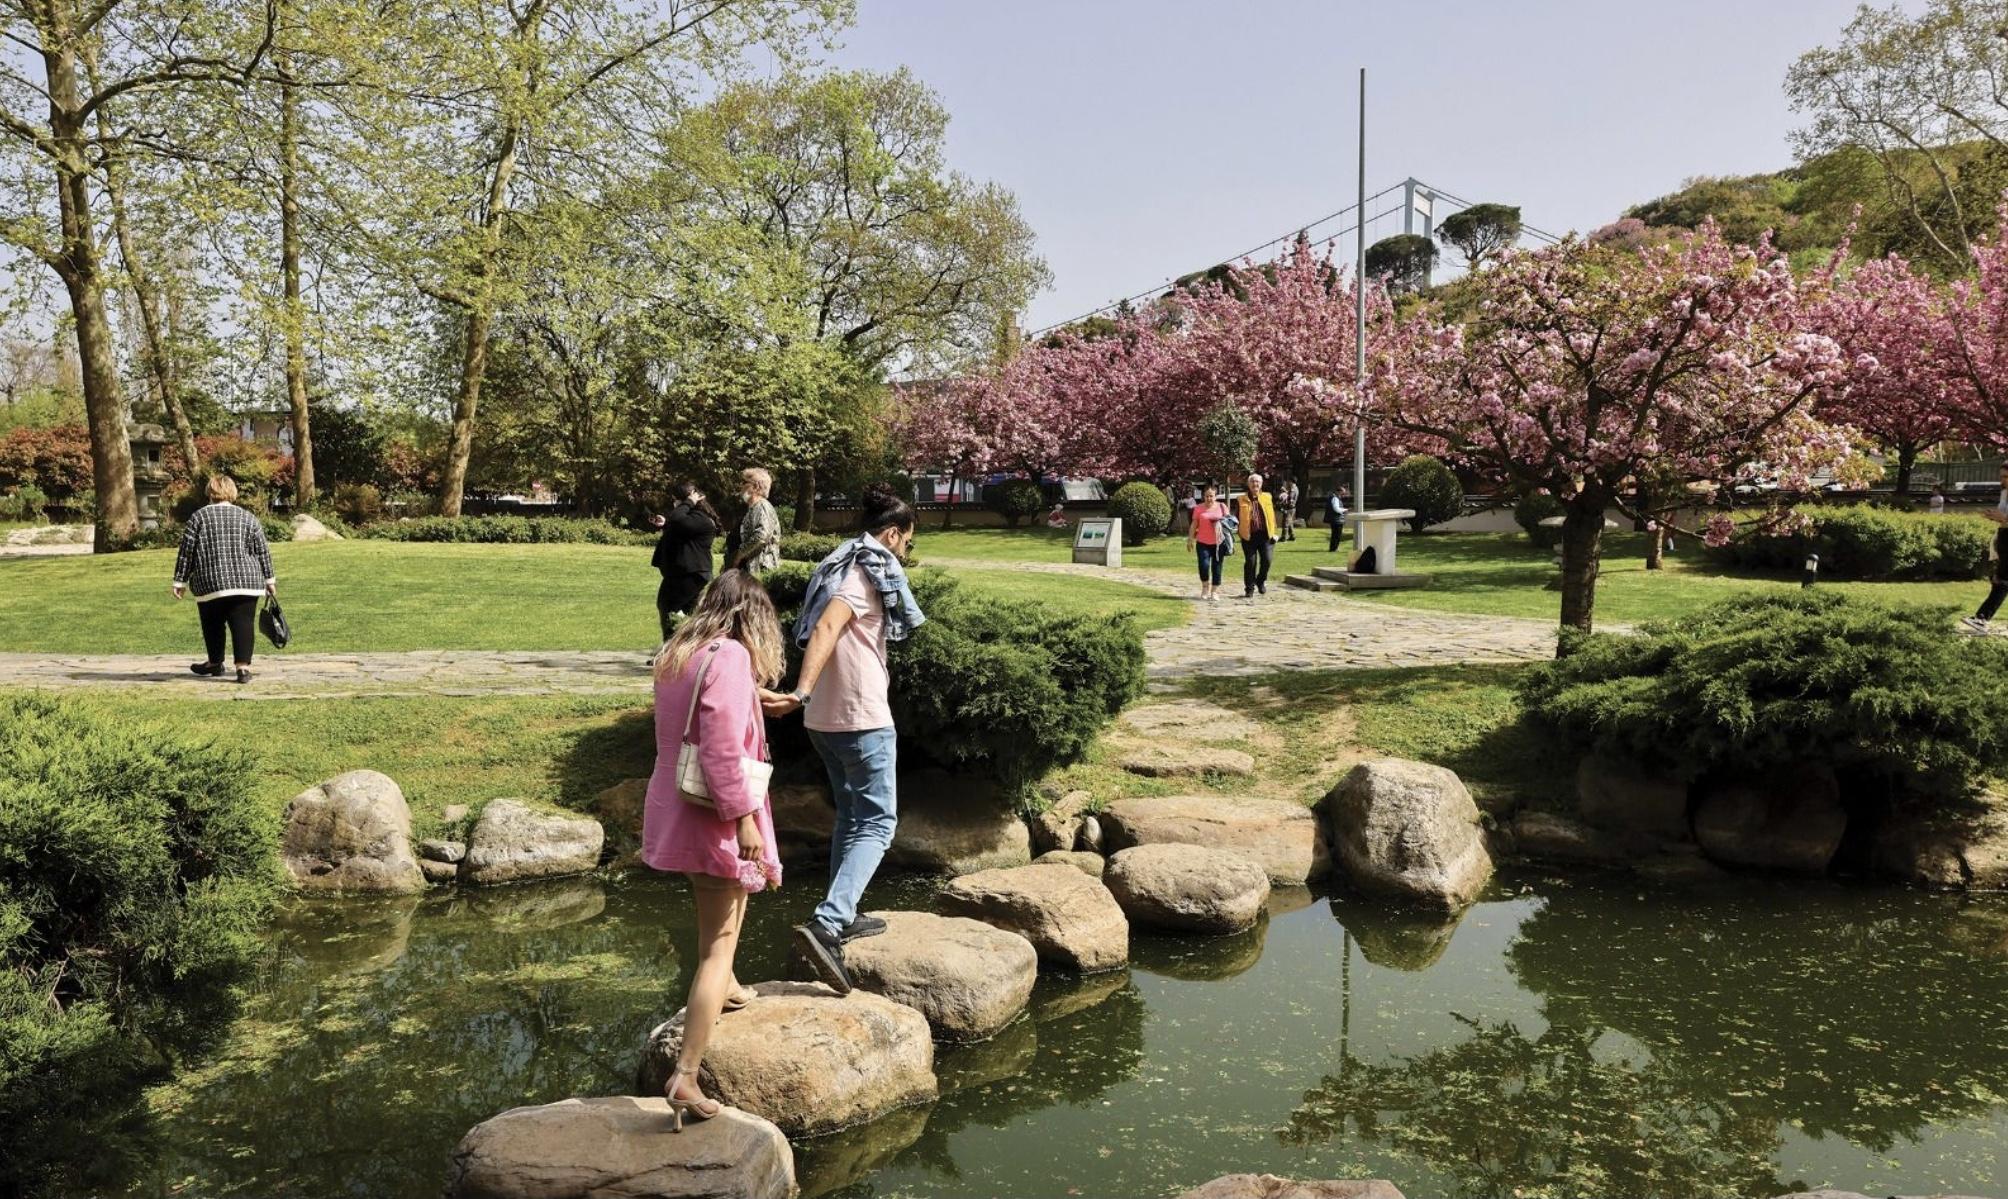 Baltalimanı Japon Bahçesi Bir İlkbahar Deneyimi